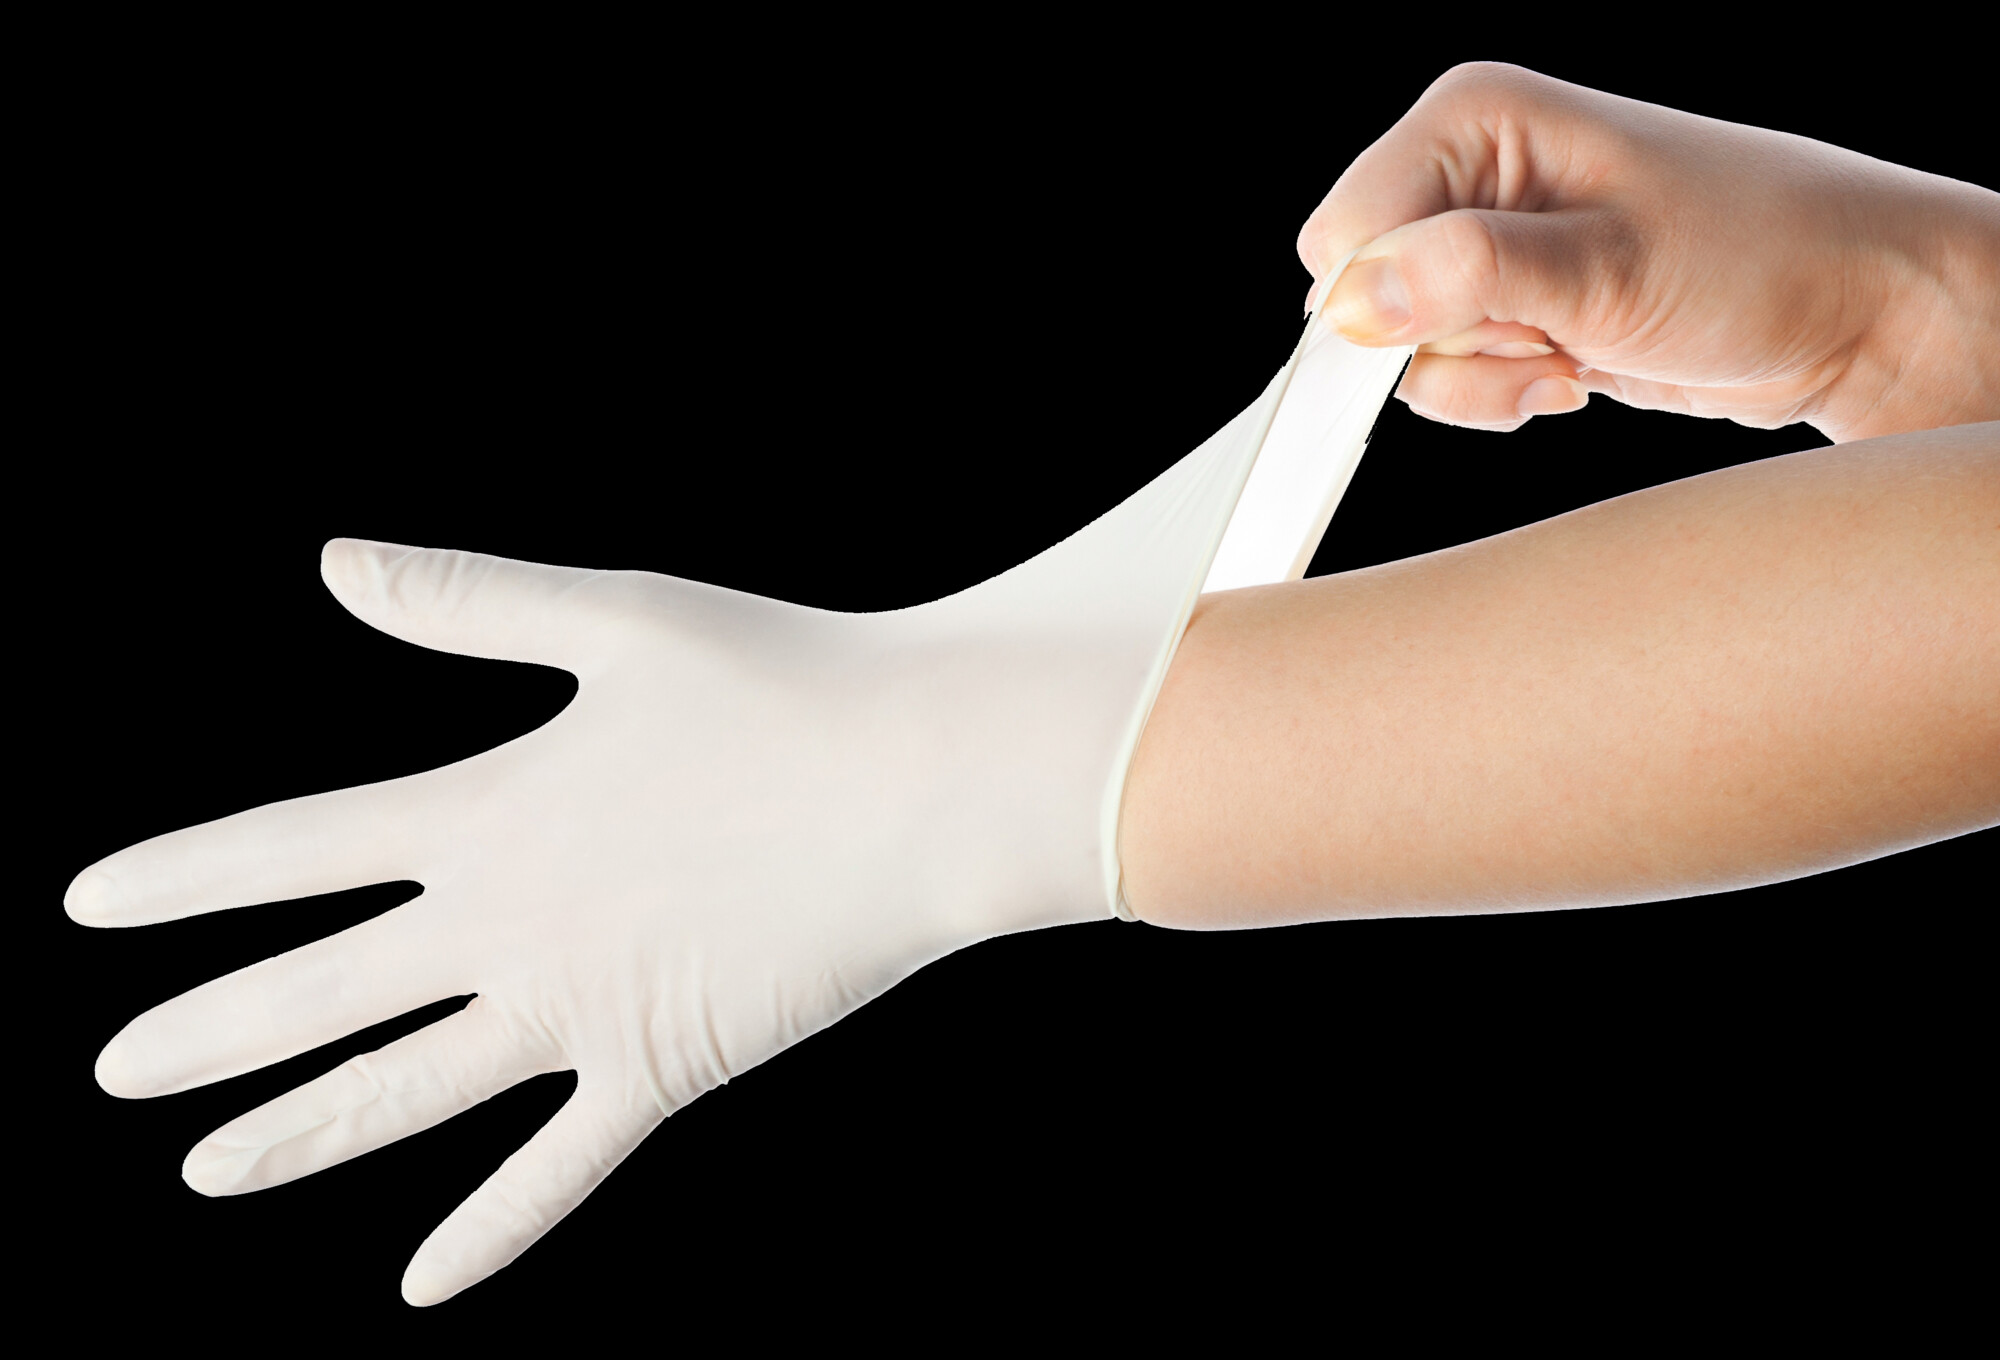 Medizinische Einmalhandschuhe sind bei Impfungen nicht nötig. Daran hat das Robert Koch-Institut anlässlich des Internationalen Tags der Händehygiene erinnert.